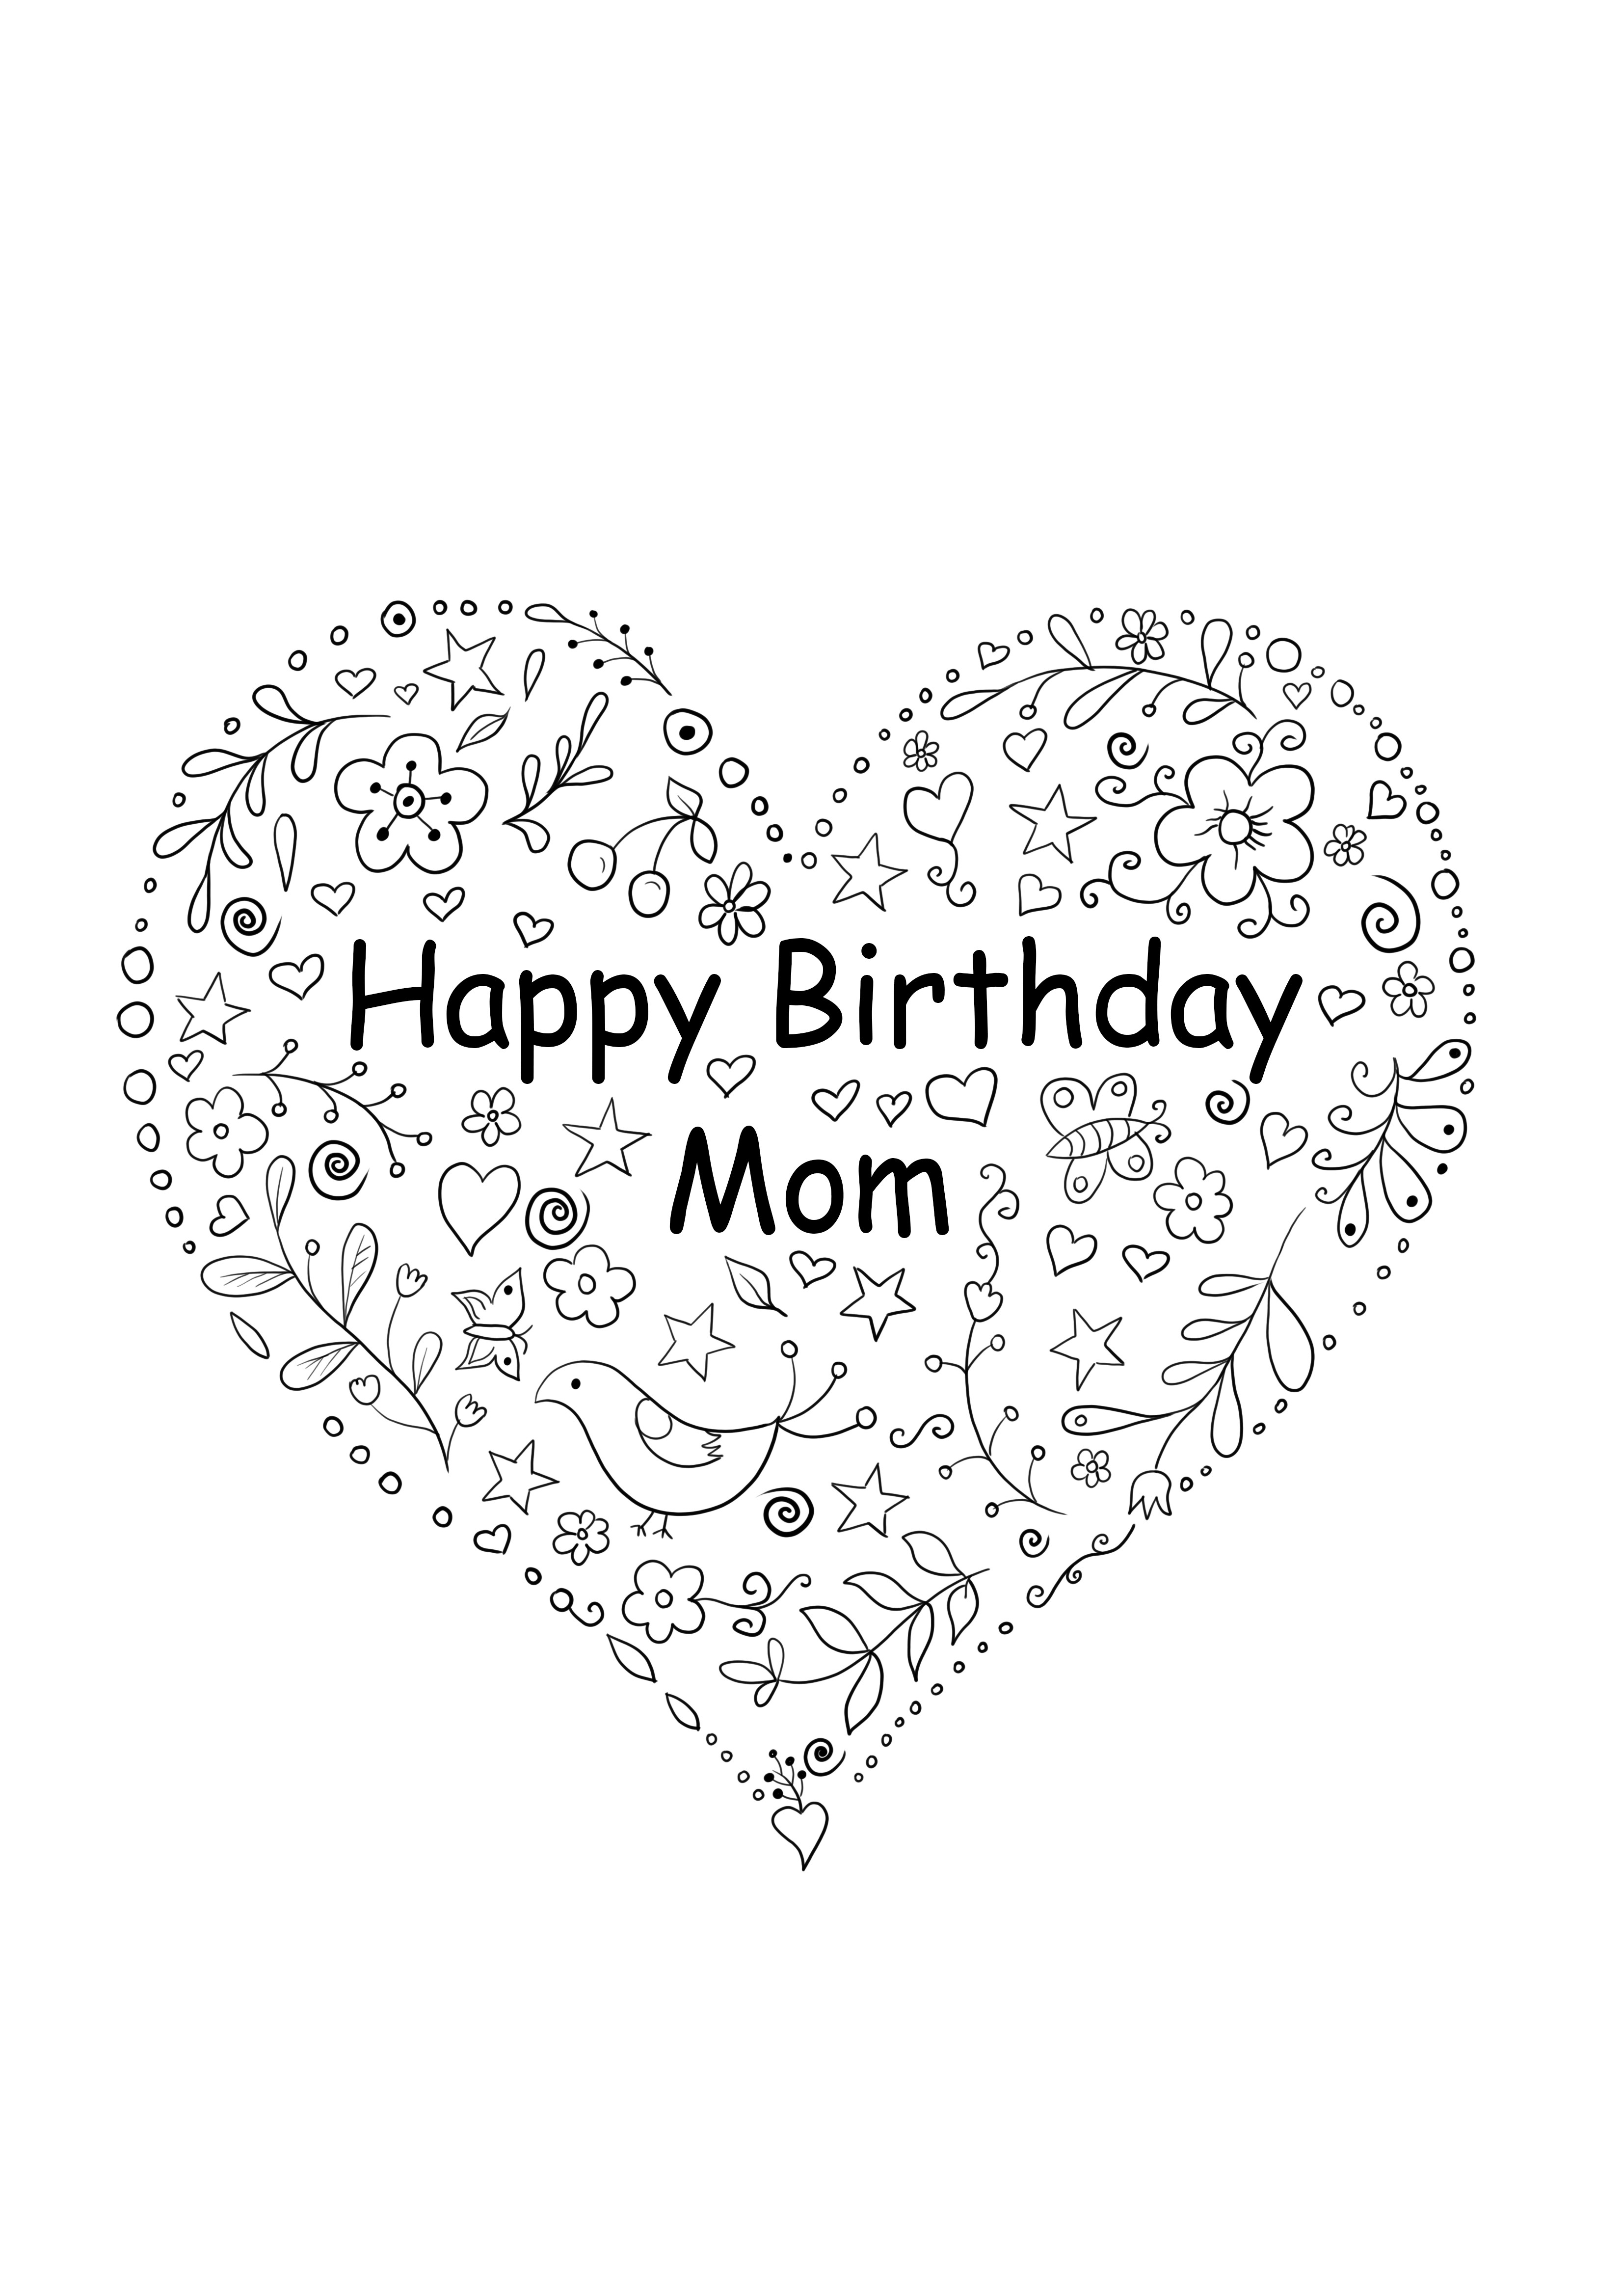 Kartu bentuk hati untuk ulang tahun ibu dapat dicetak gratis